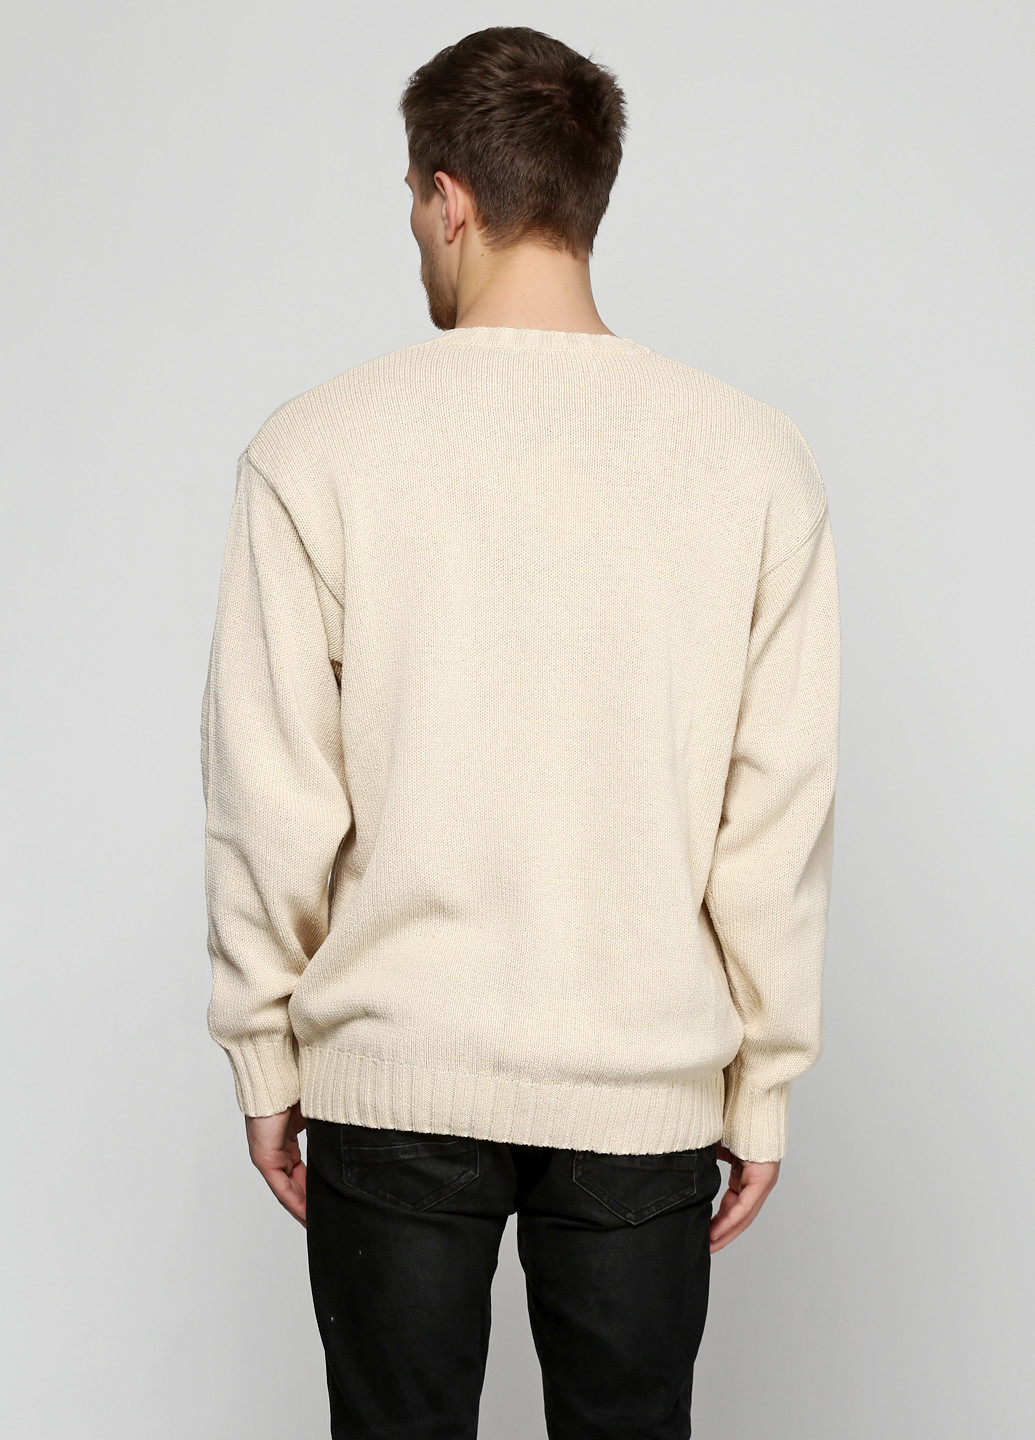 Светло-бежевый демисезонный пуловер пуловер Barbieri